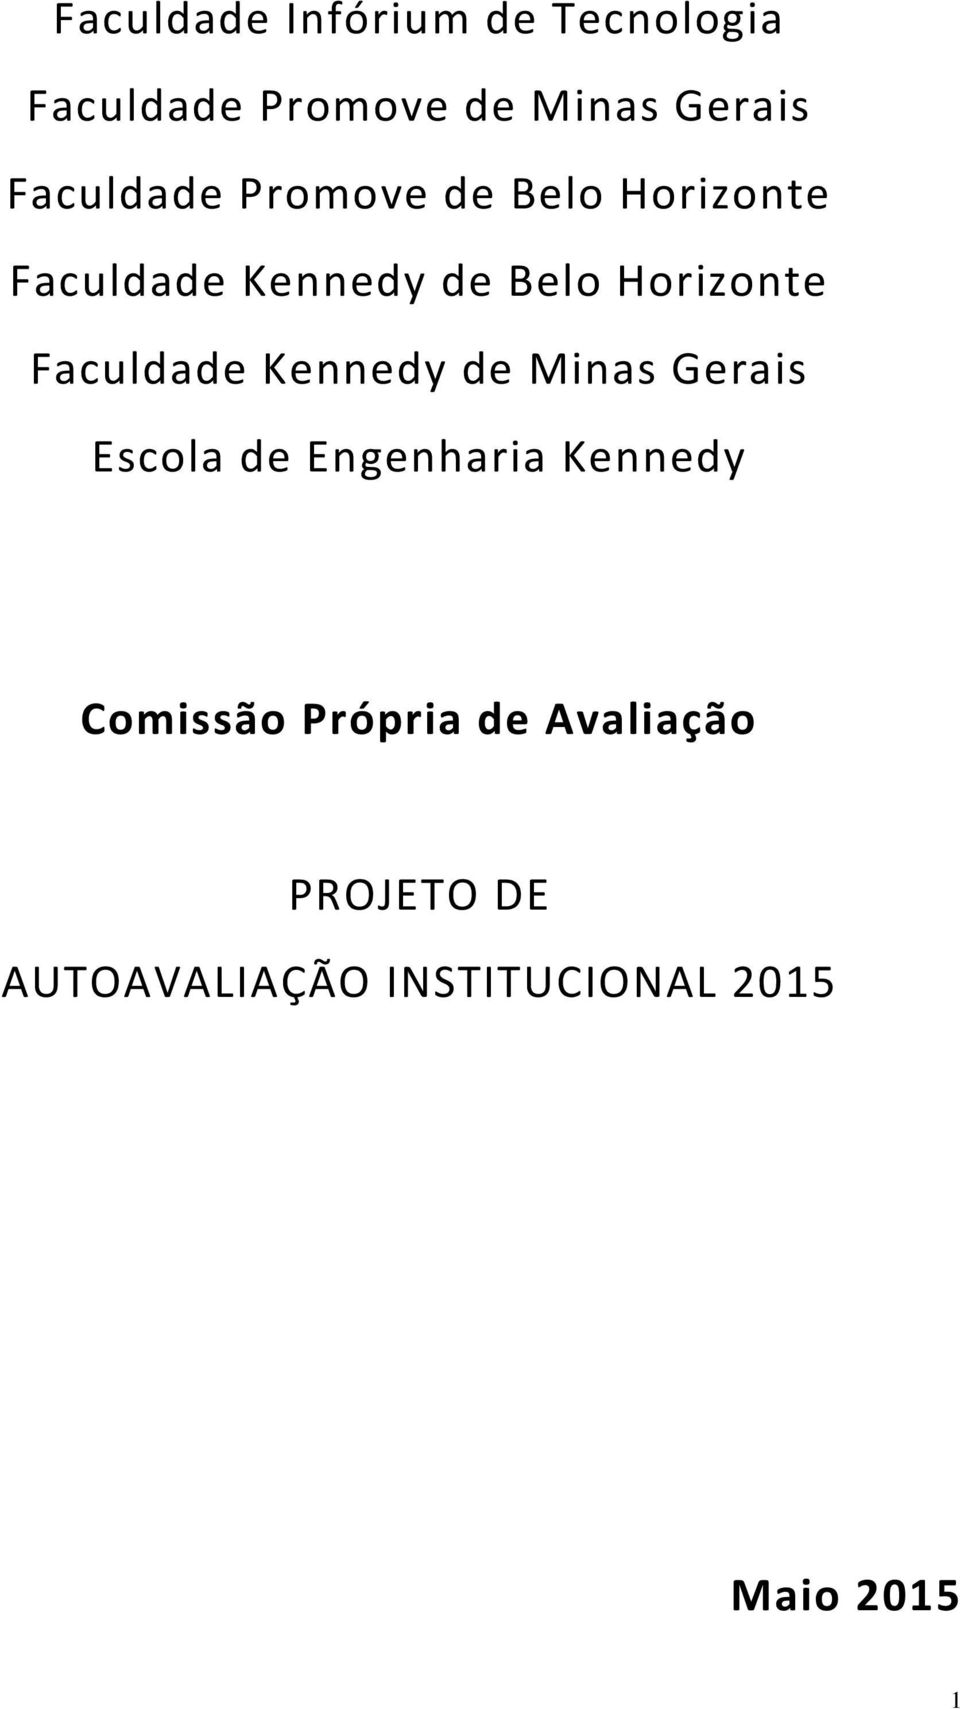 Faculdade Kennedy de Minas Gerais Escola de Engenharia Kennedy Comissão